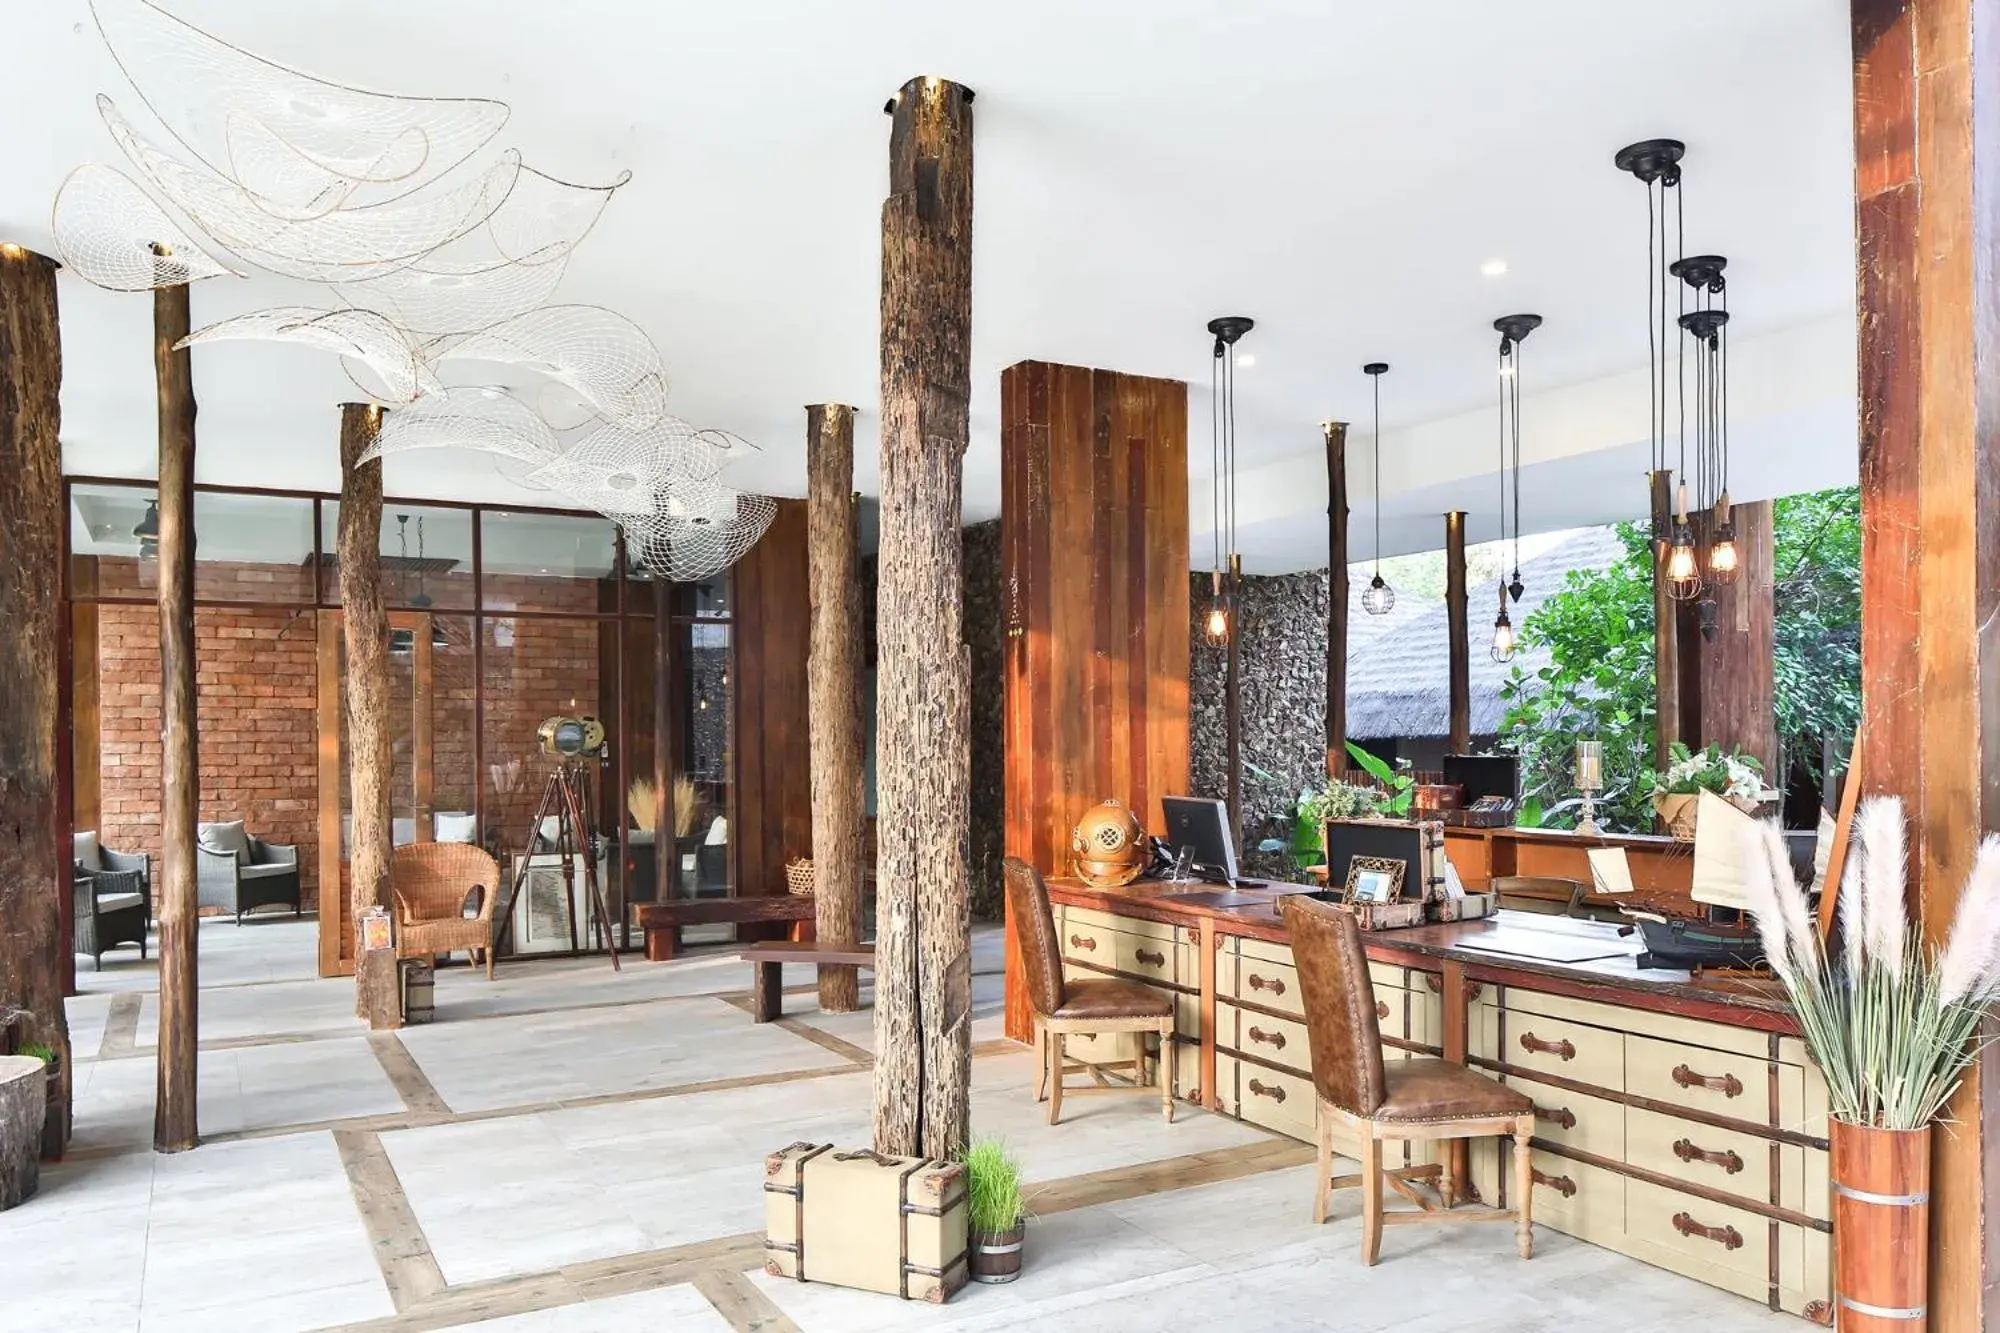 Lobby or reception in U Pattaya